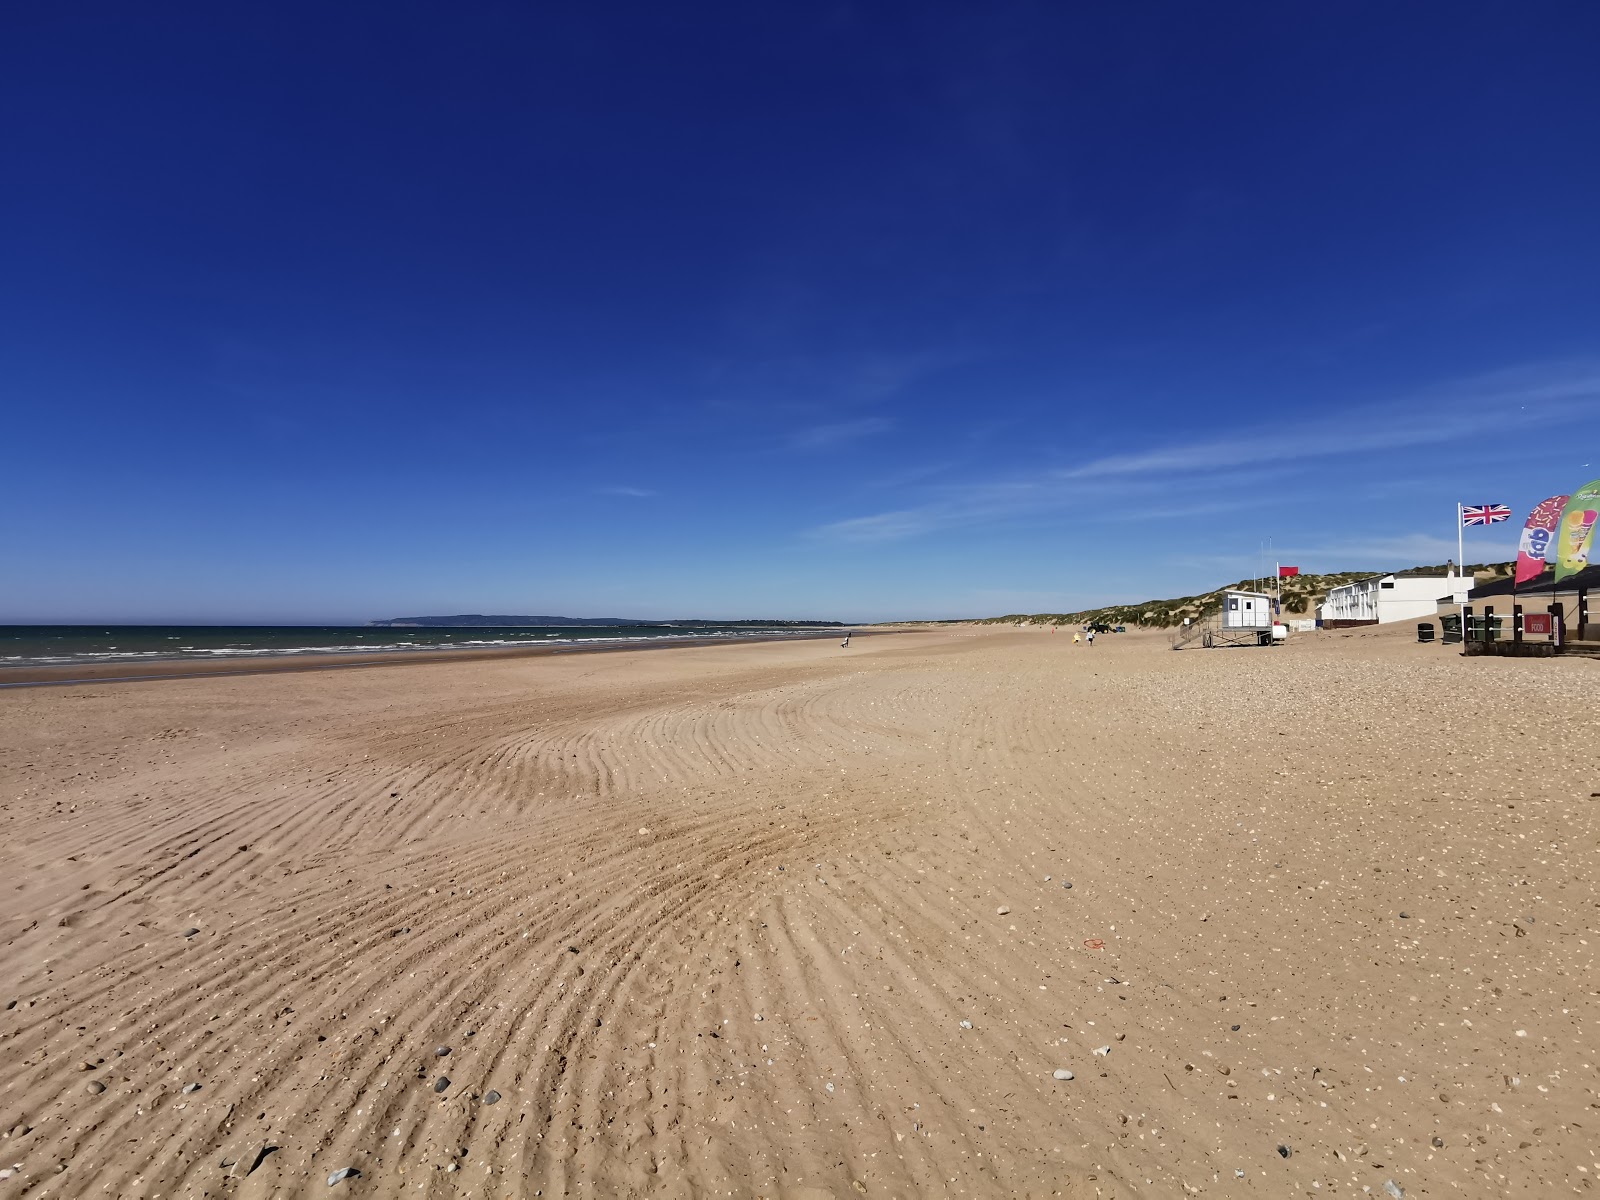 Foto af Camber sands beach faciliteter område